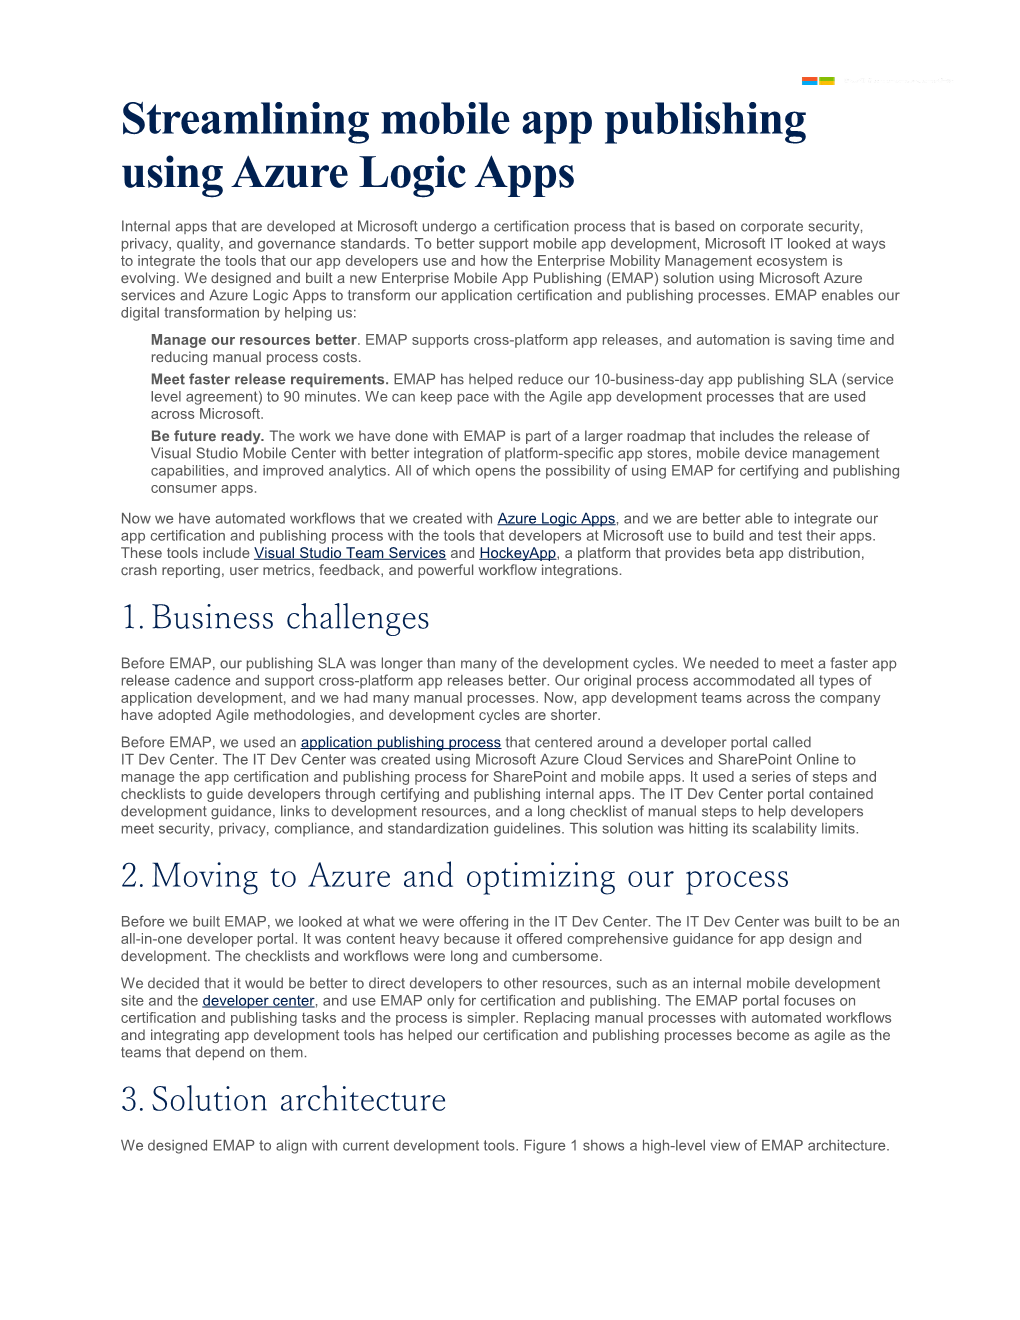 Streamlining Mobile App Publishing Using Azure Logic Apps